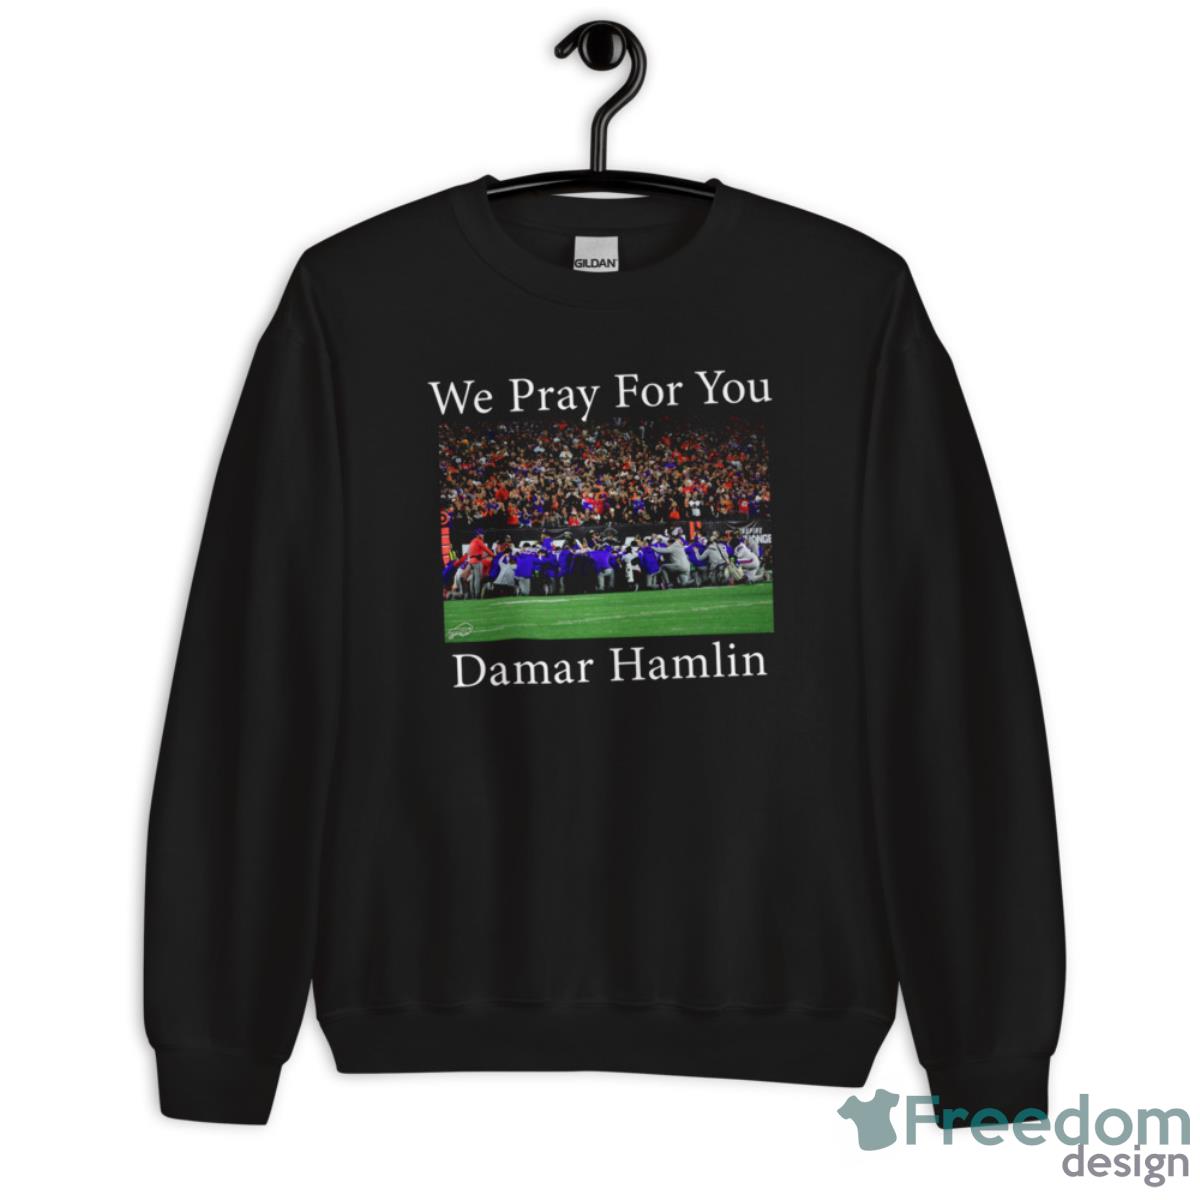 We Pray For You Damar Hamlin Shirt